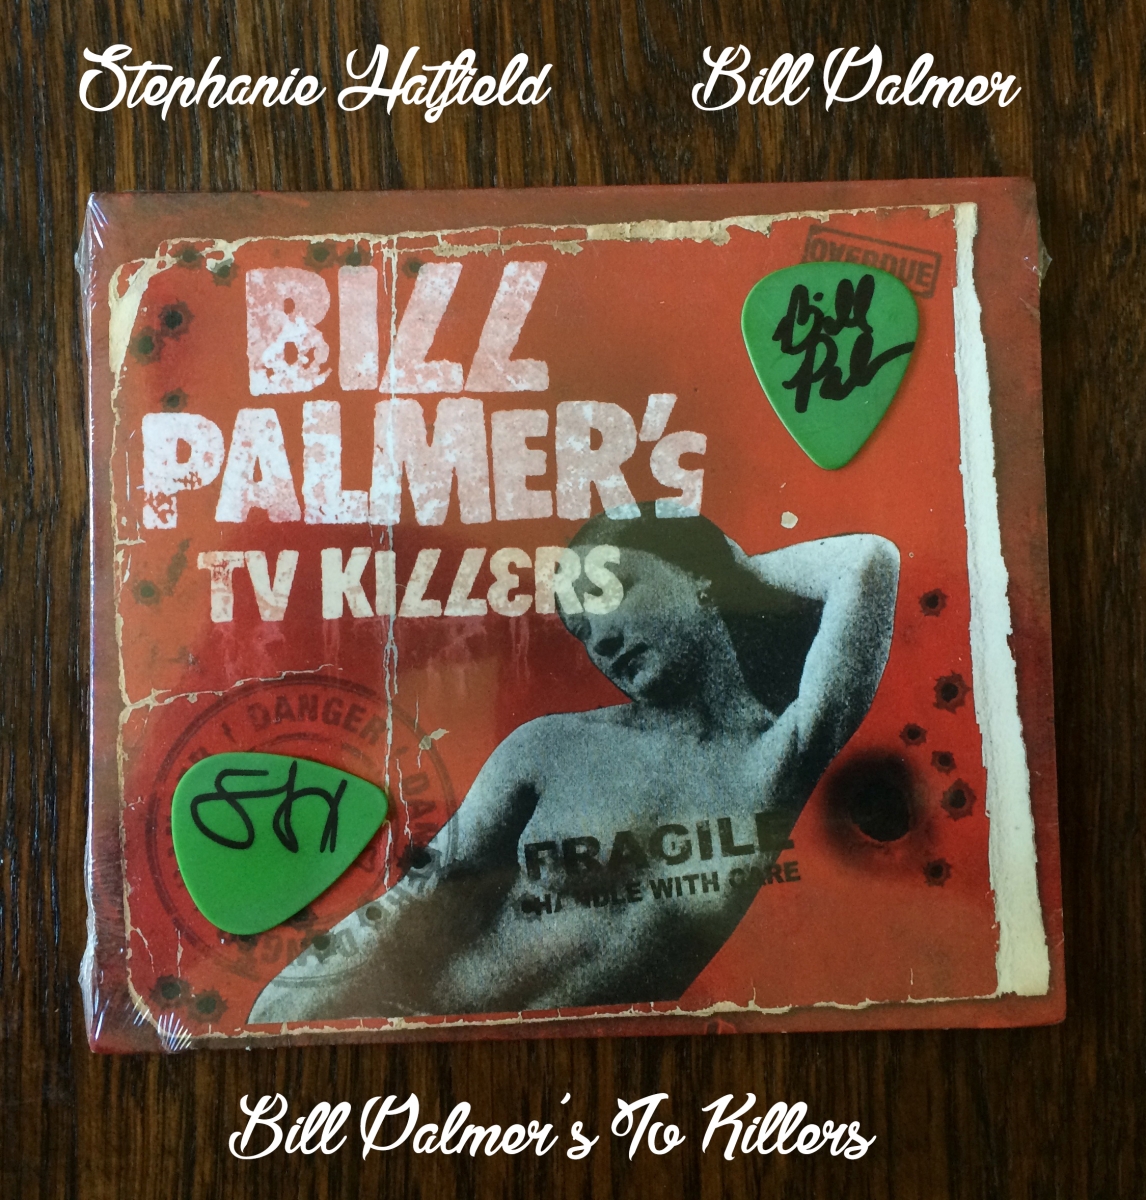 Bill Palmers TV killers